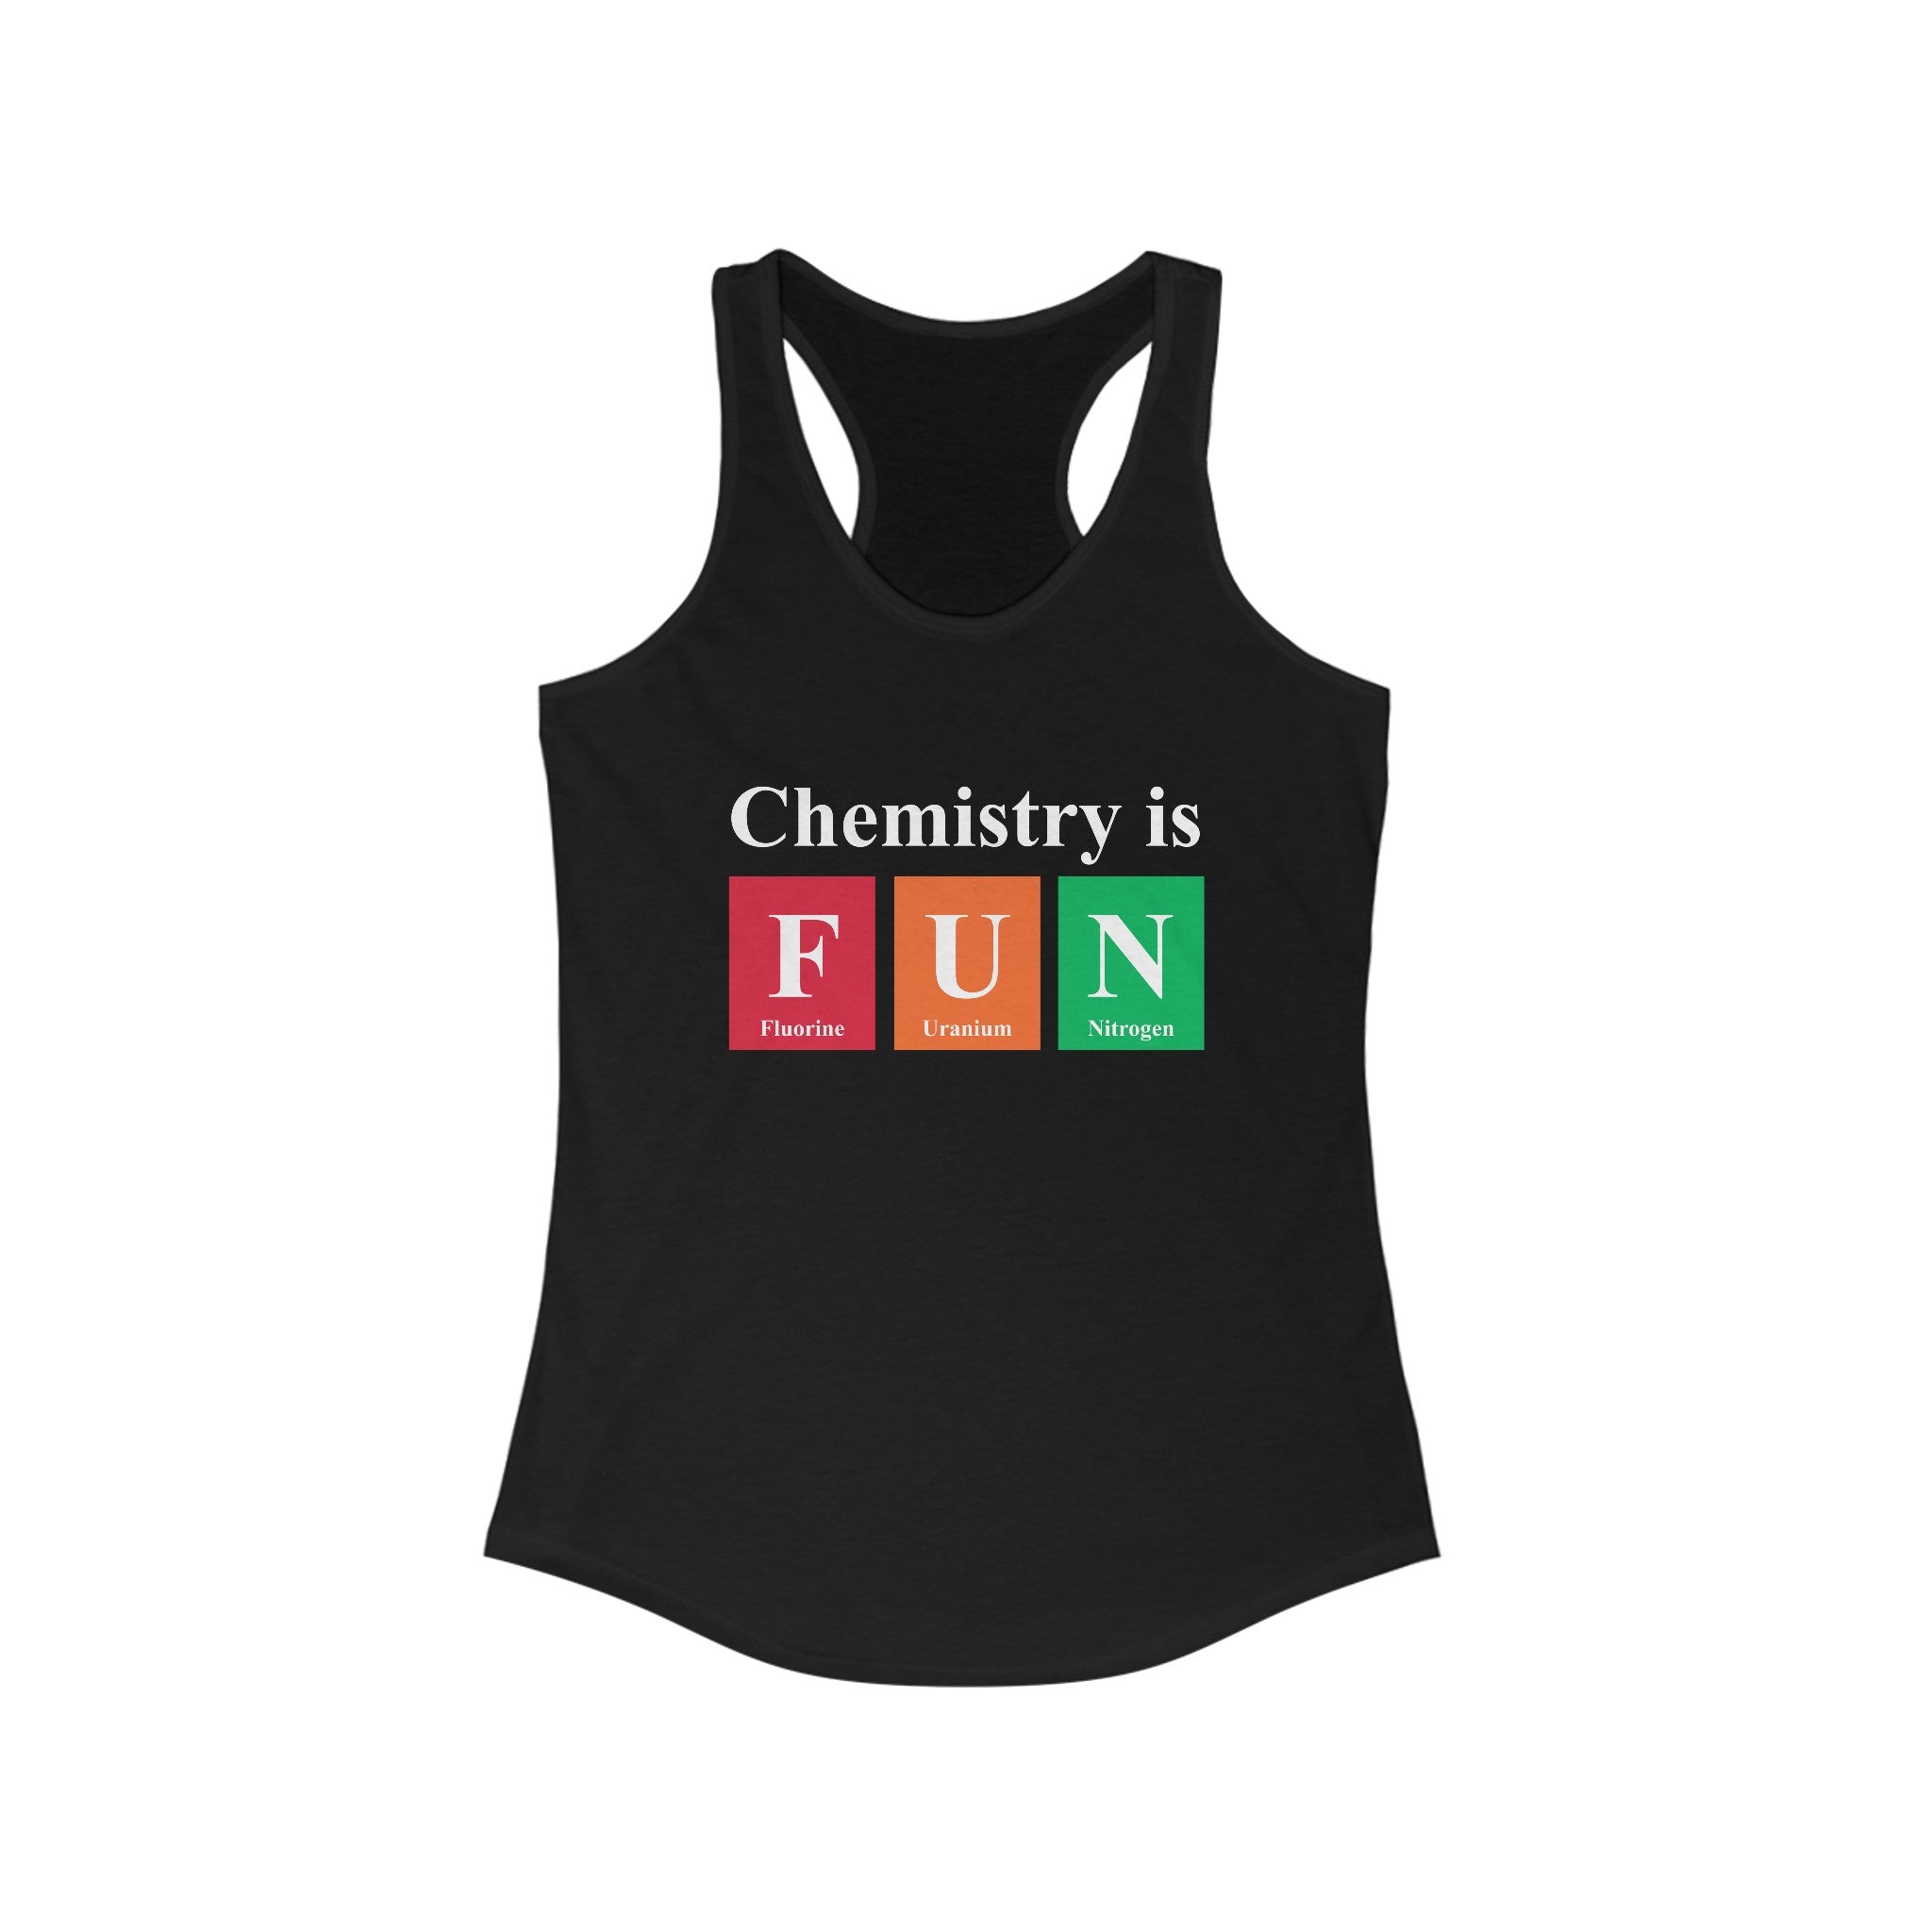 Chemistry is FUN - Women's Racerback Tank